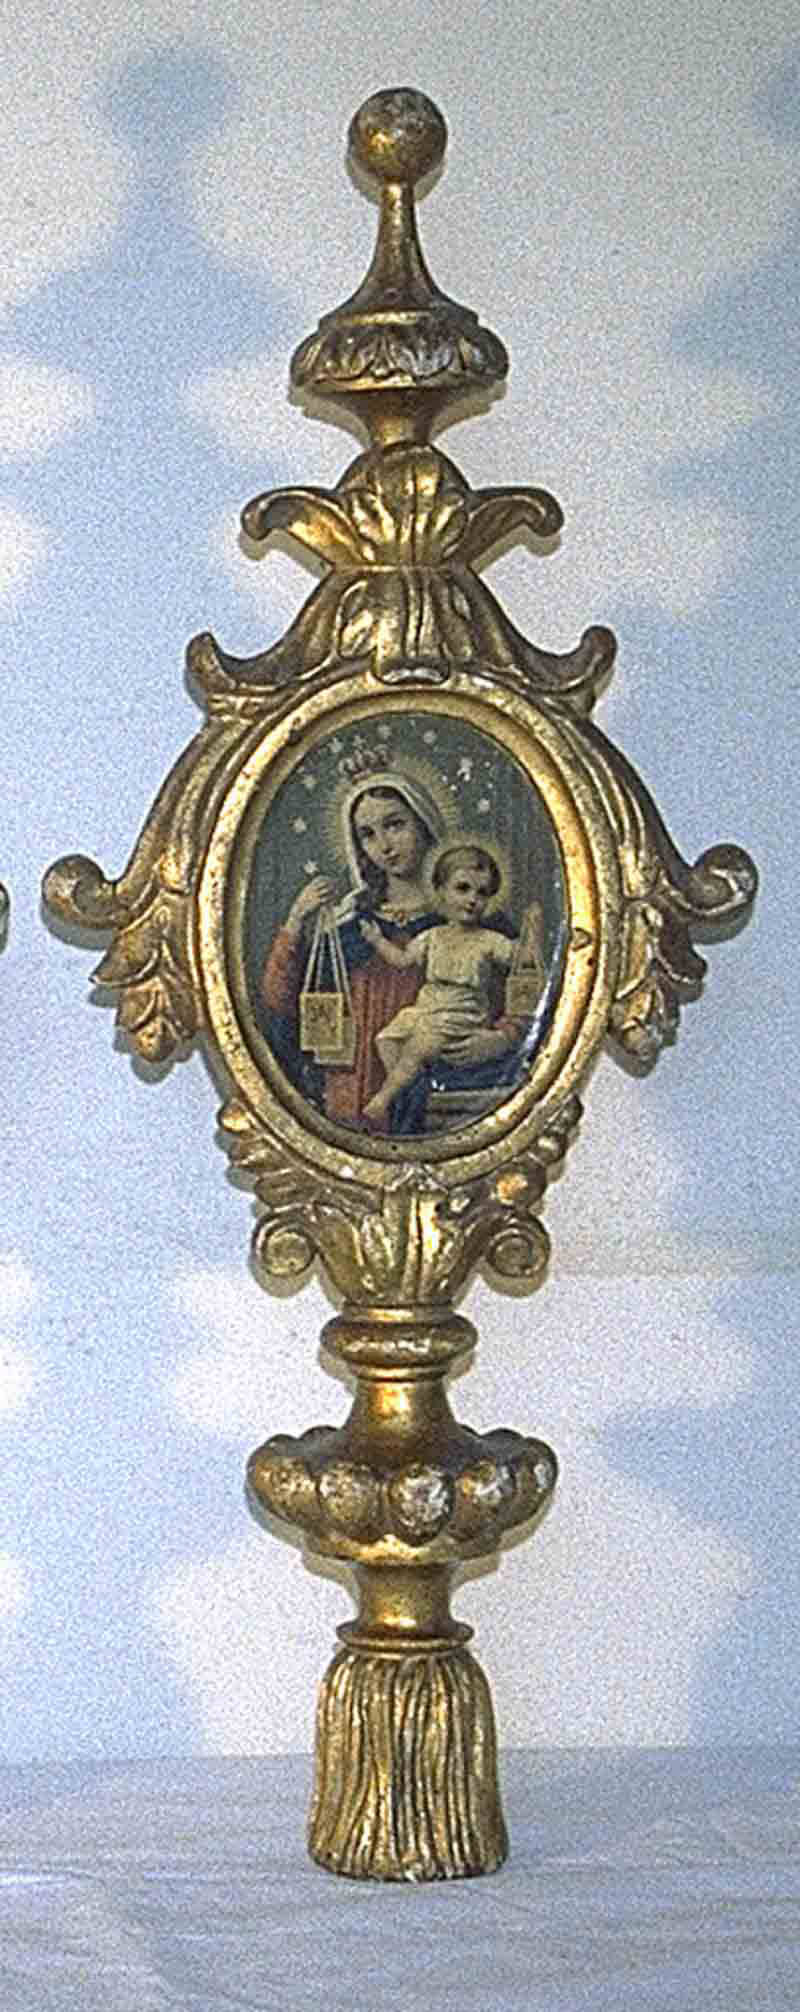 Insegna processionale con Madonna del Carmelo